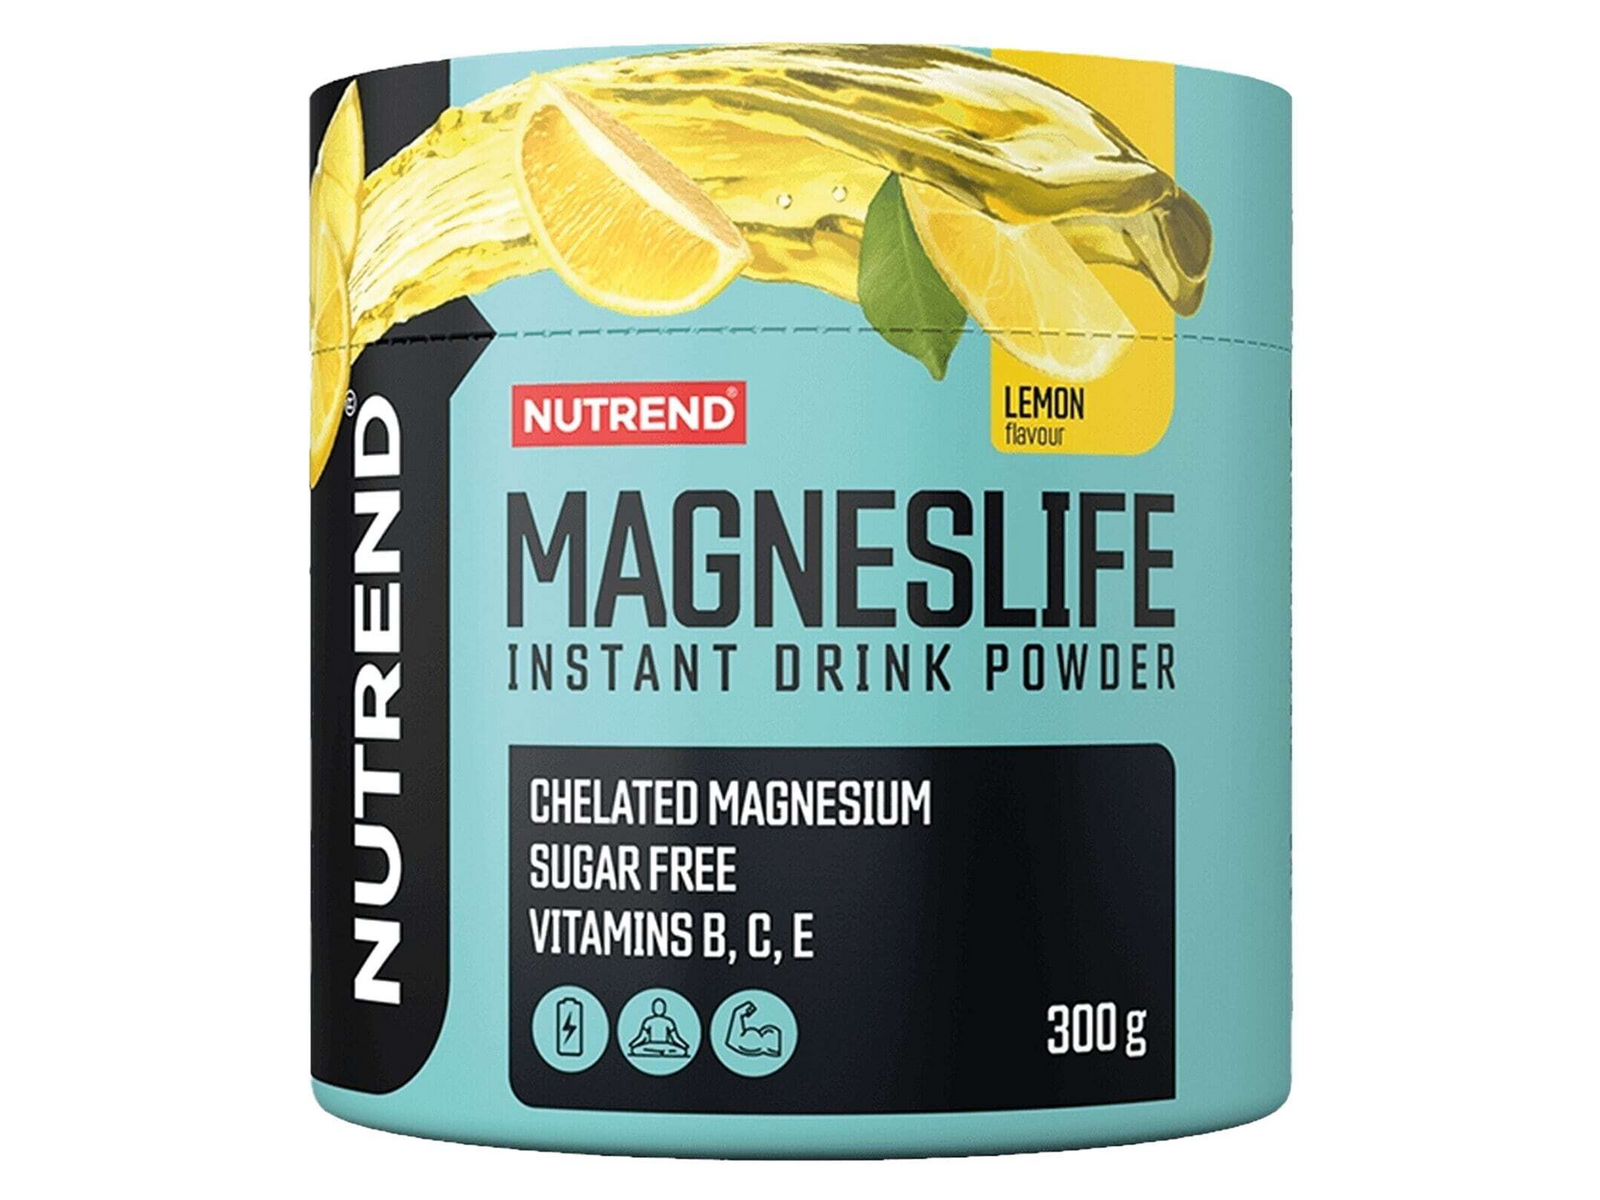 Magneslife Instant Drink Powder (Lemon - 300 gram) - NUTREND